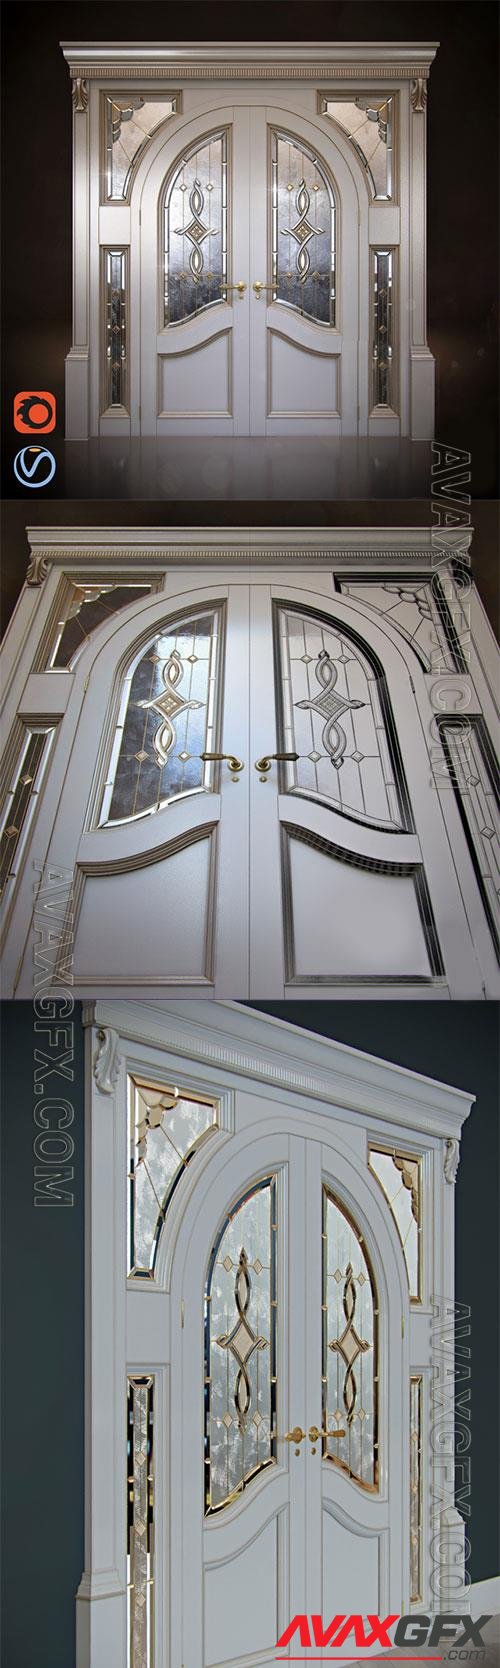 Classic doors - arch